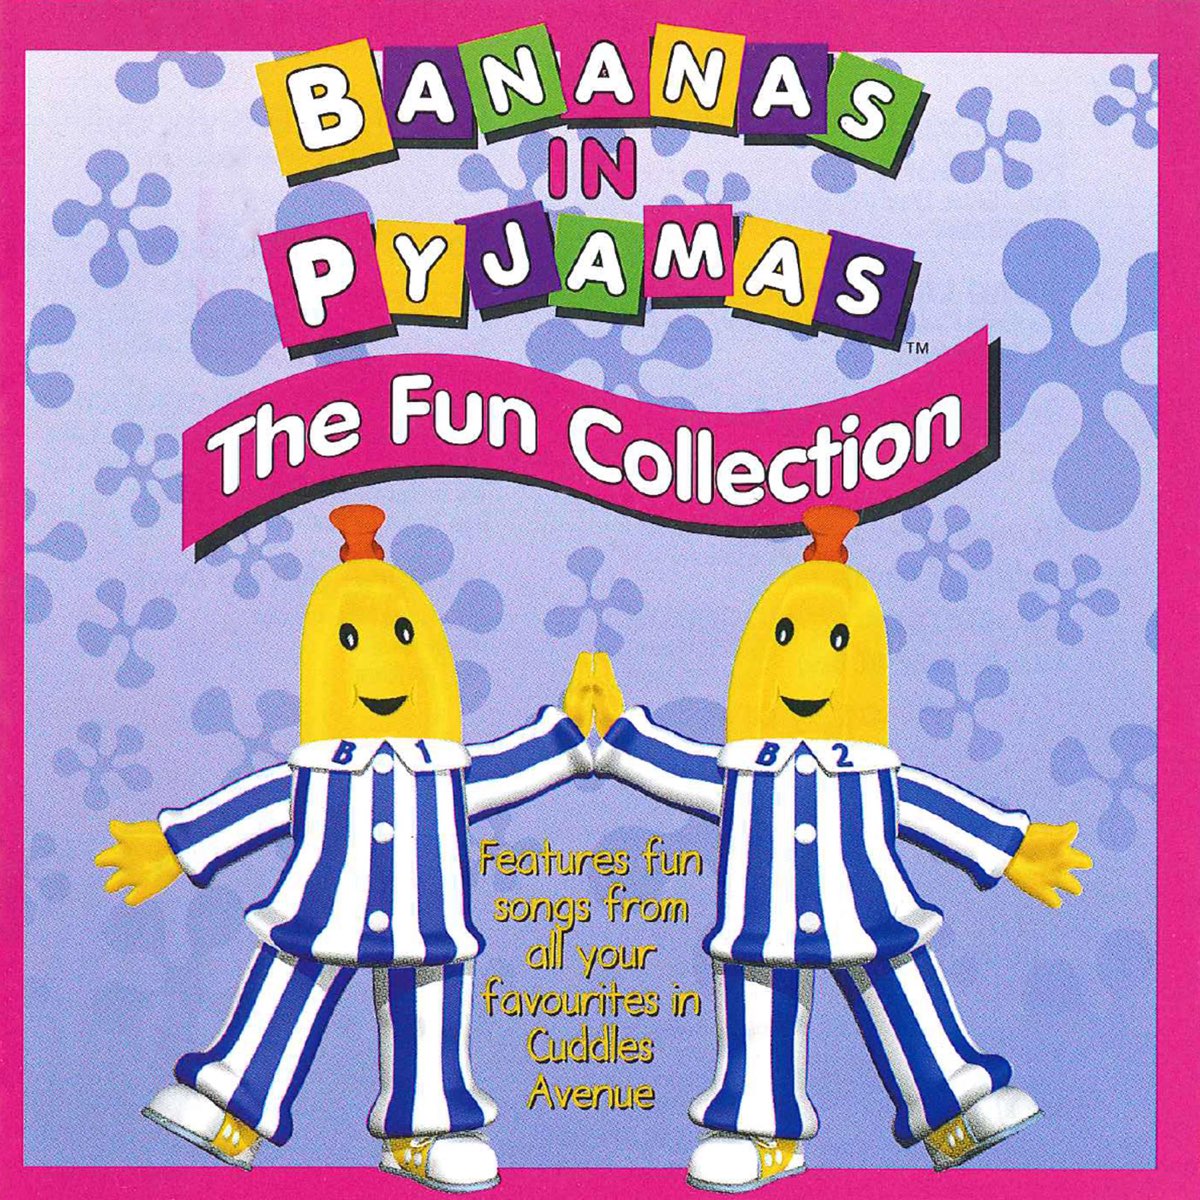 Funny song studio. Fun. Bananas in Pyjamas. Fun fun fun песня. Bananas in Pyjamas 1992.